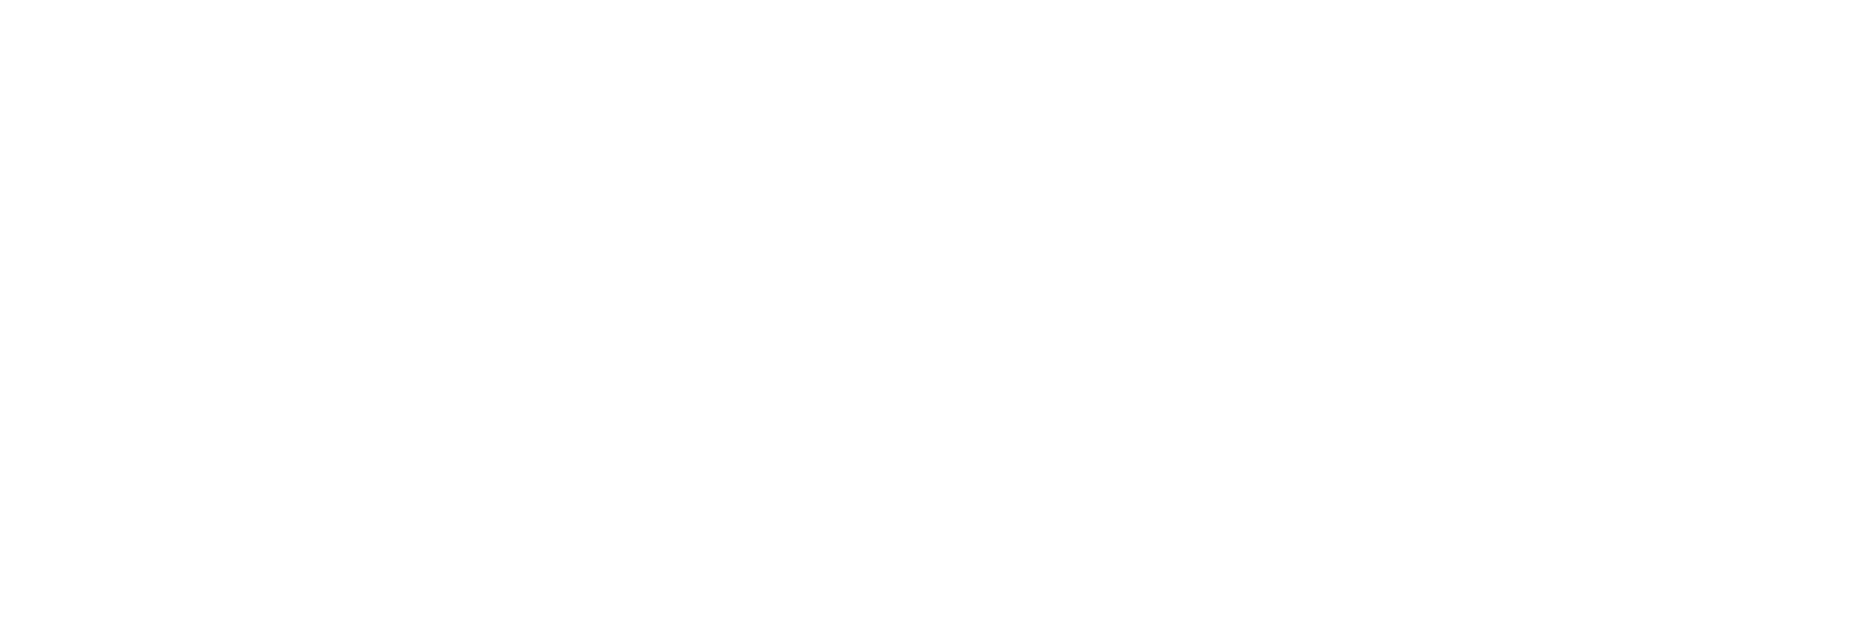 انجمن صنایع غذایی استان آذربایجان شرقی